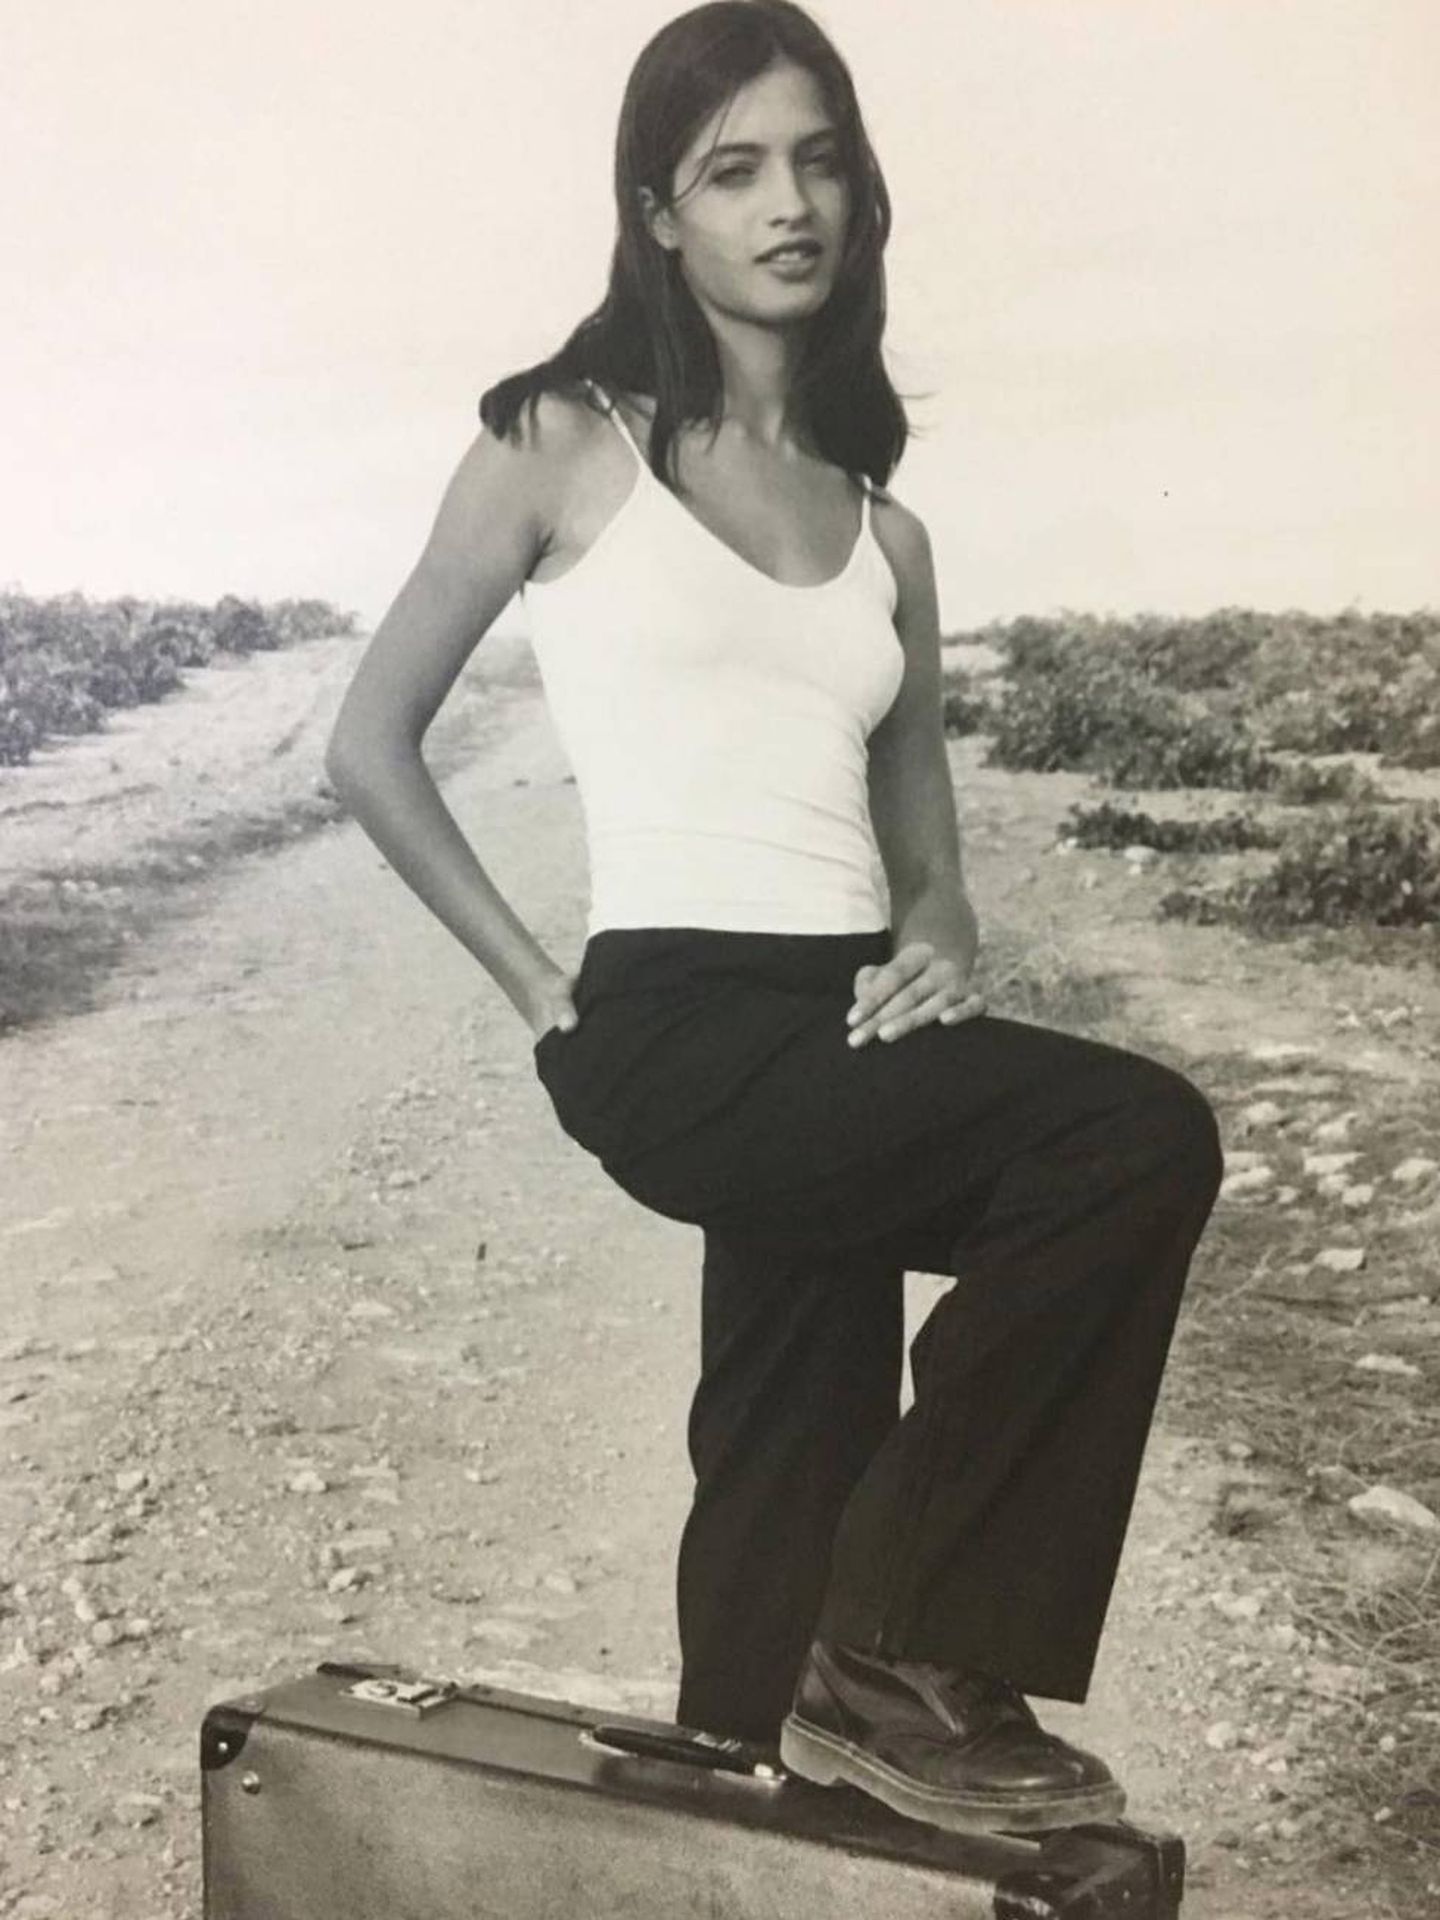  Sara en una imagen de 1998, cuando tenía 14 años. (Instagram)